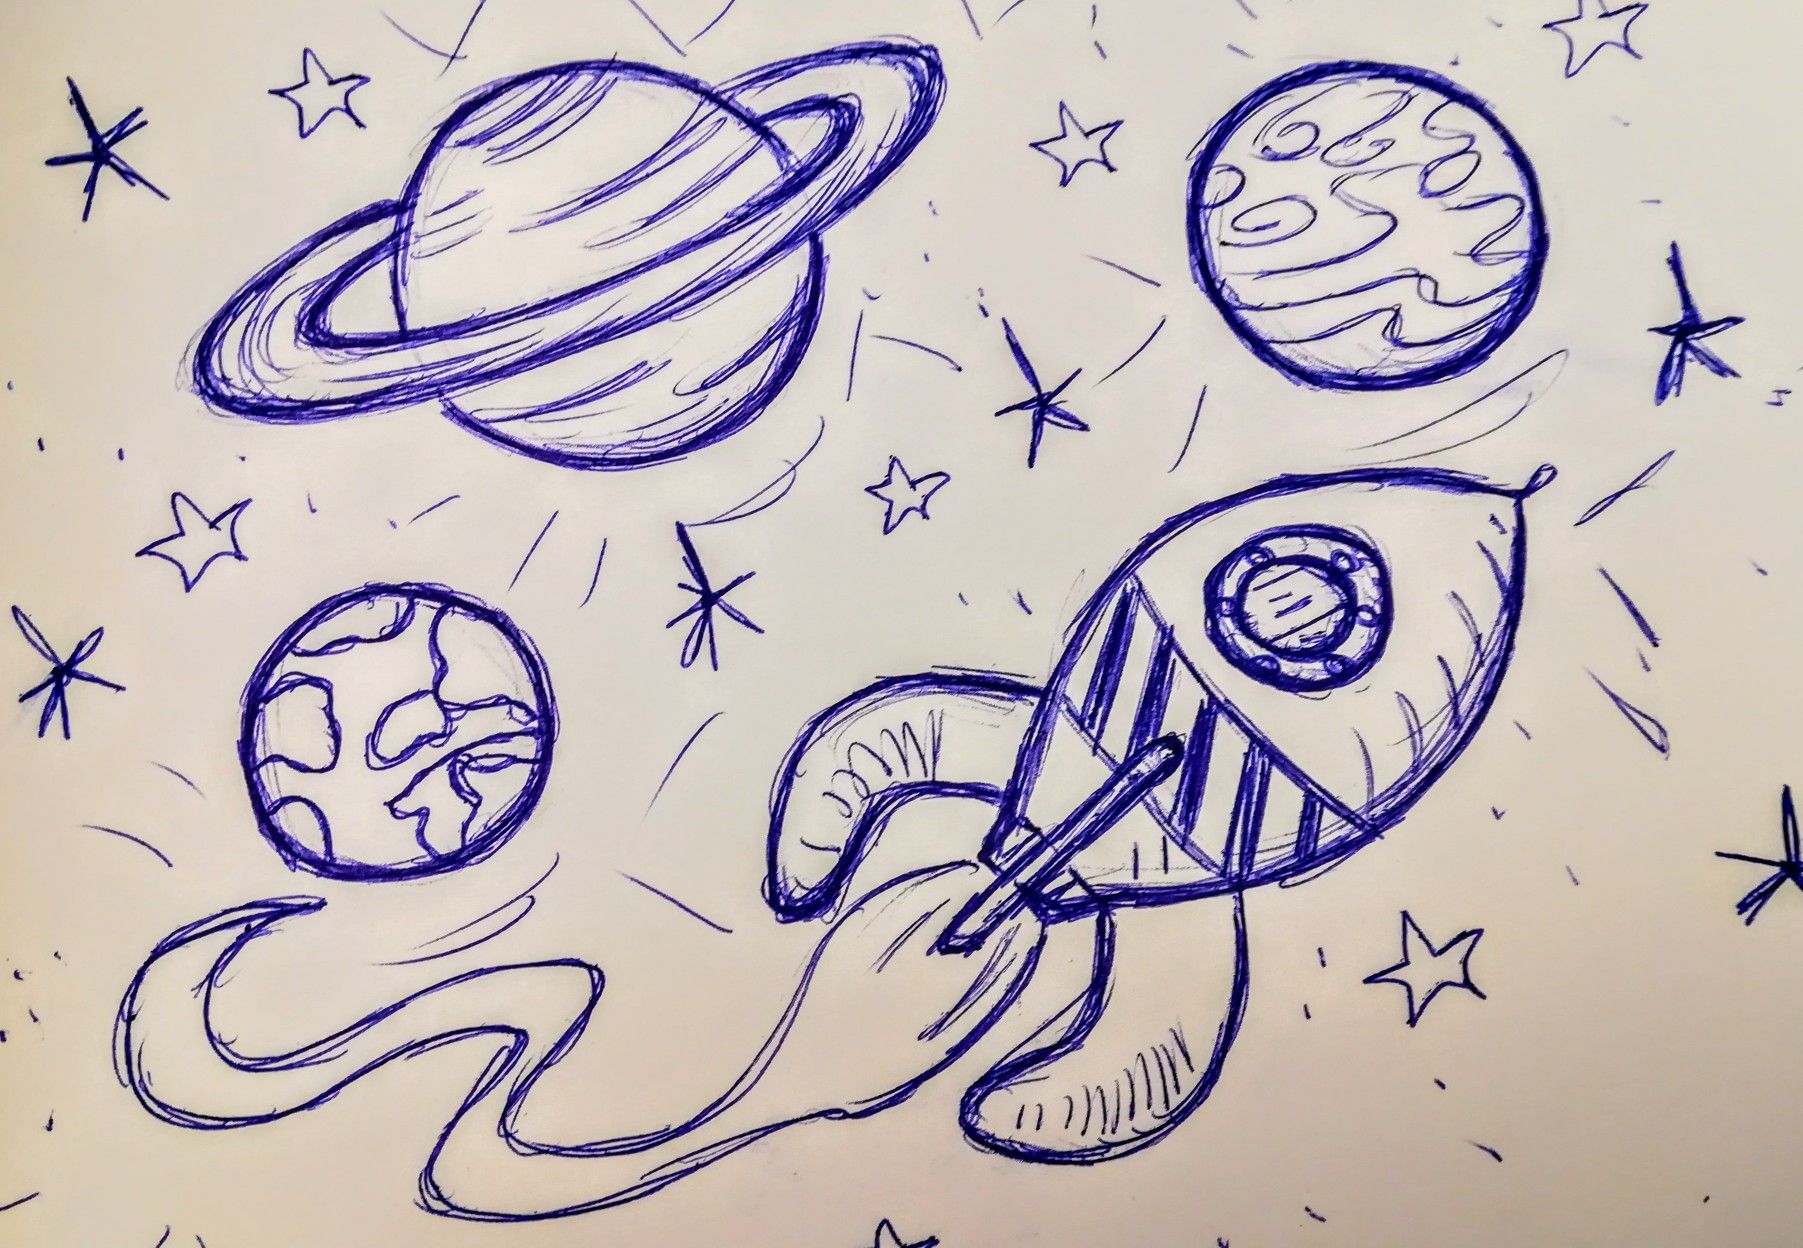 Картинки на день космонавтики для срисовки